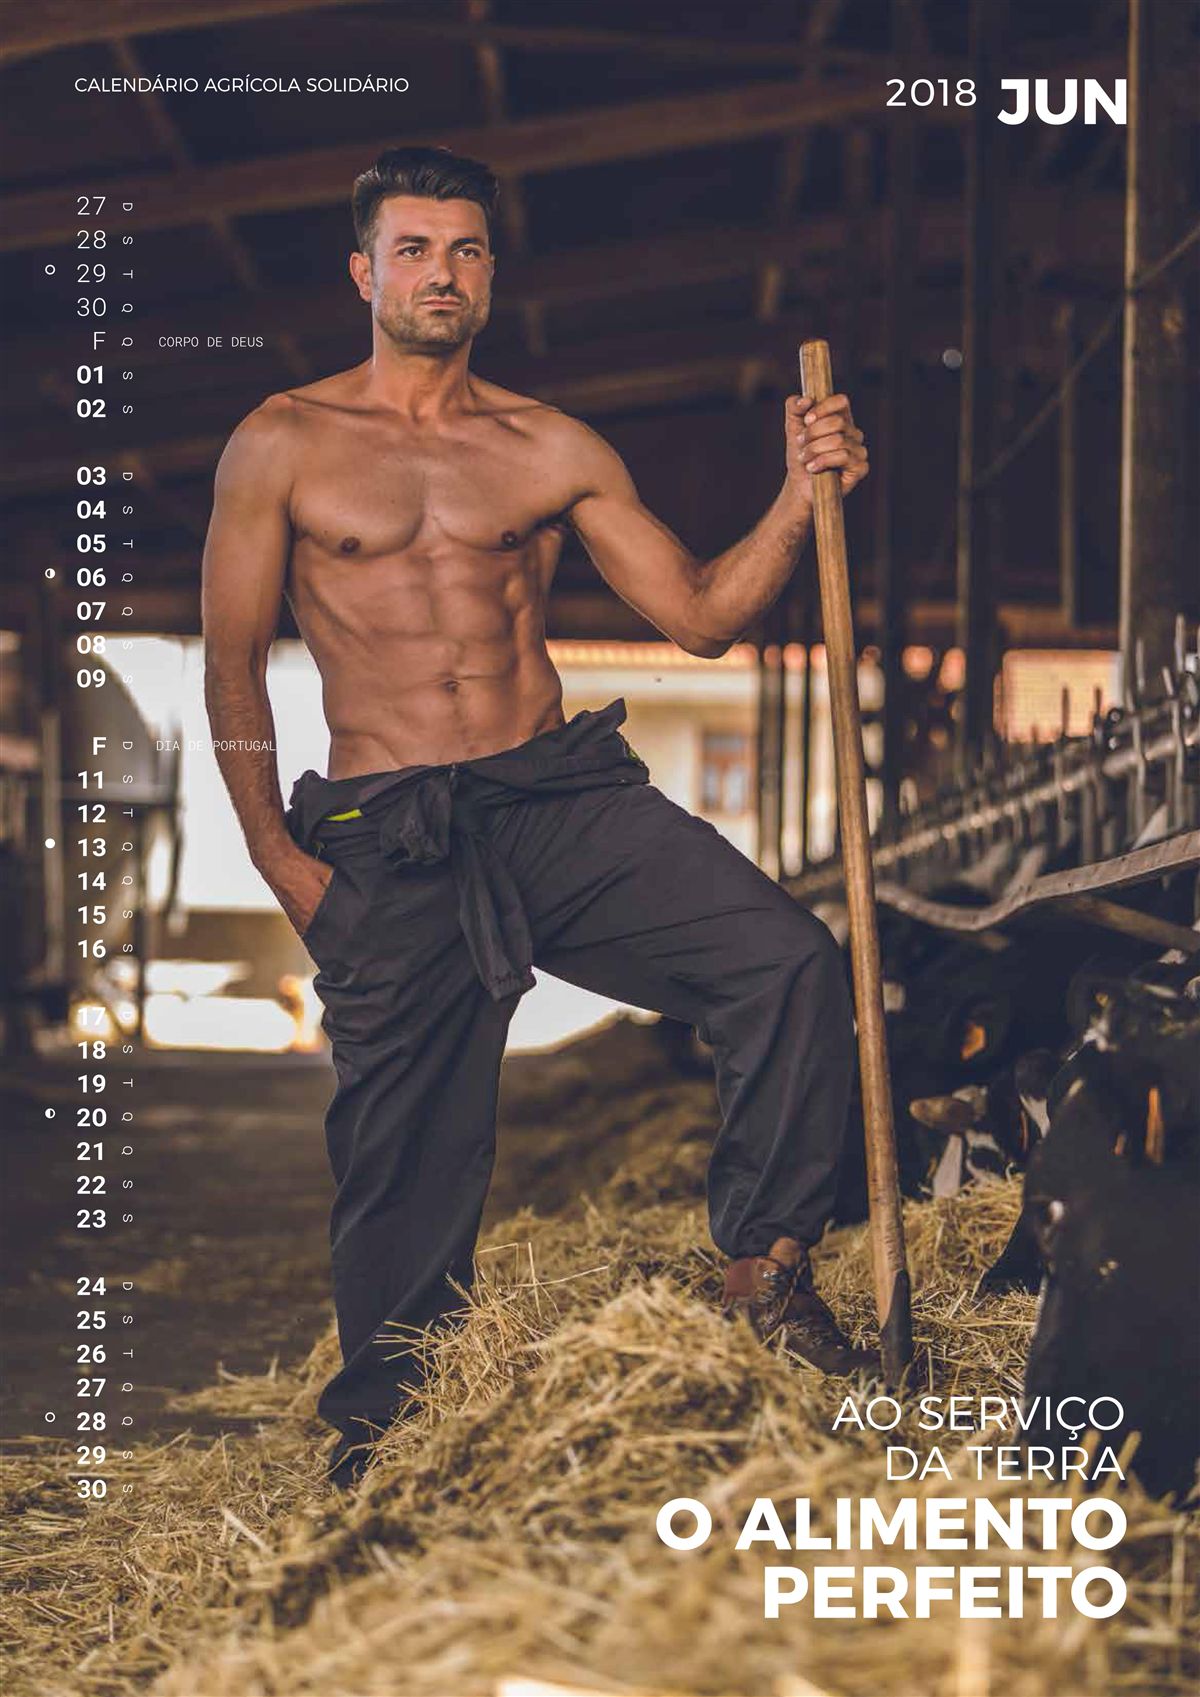 Agricultores de Barcelos num calendário sexy, e solidário, está a encantar a web